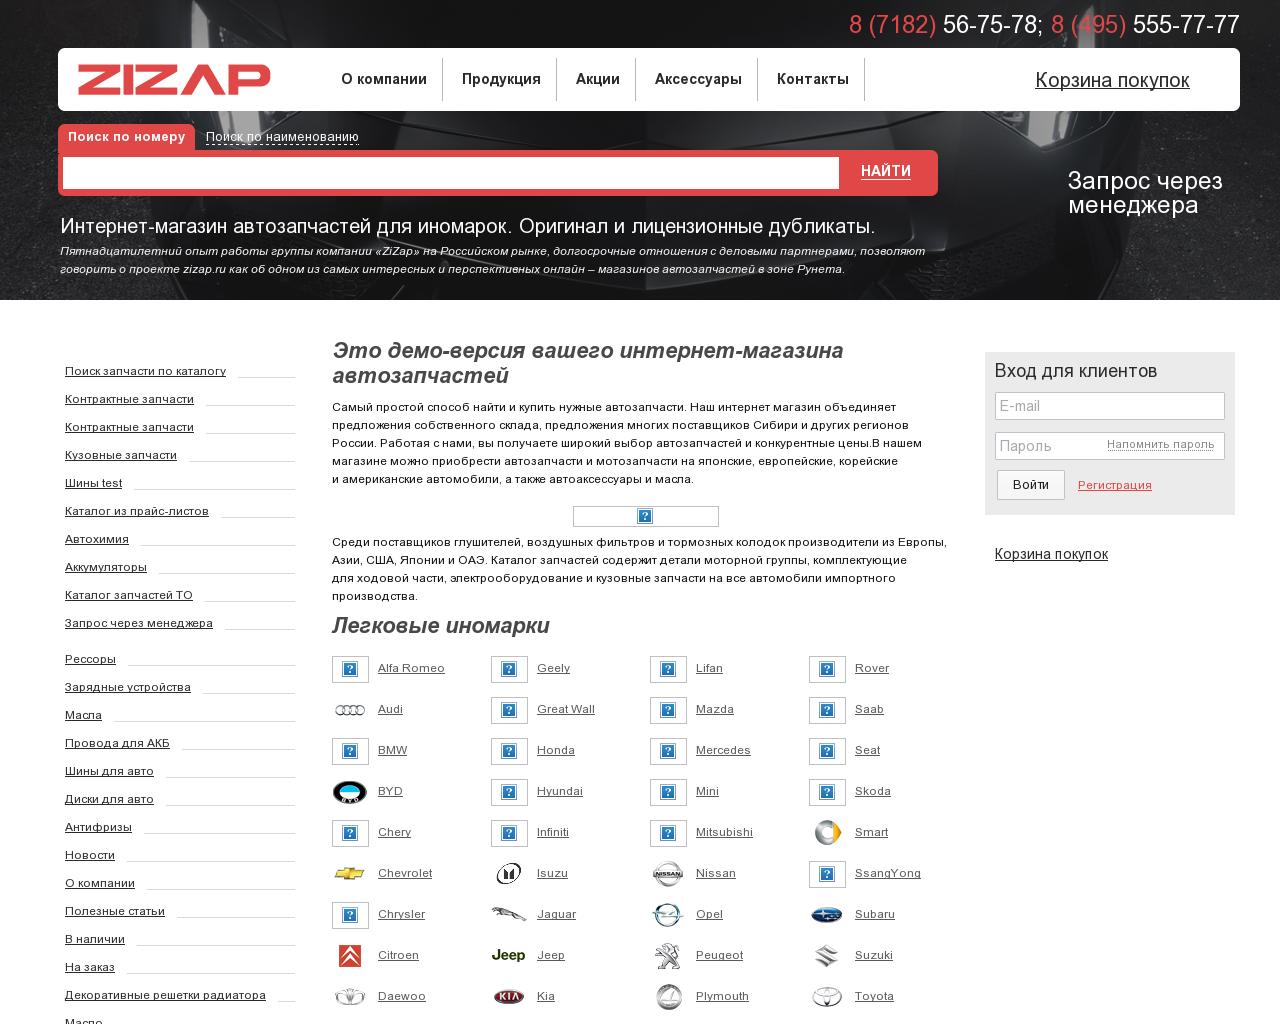 Изображение сайта zizap.ru в разрешении 1280x1024